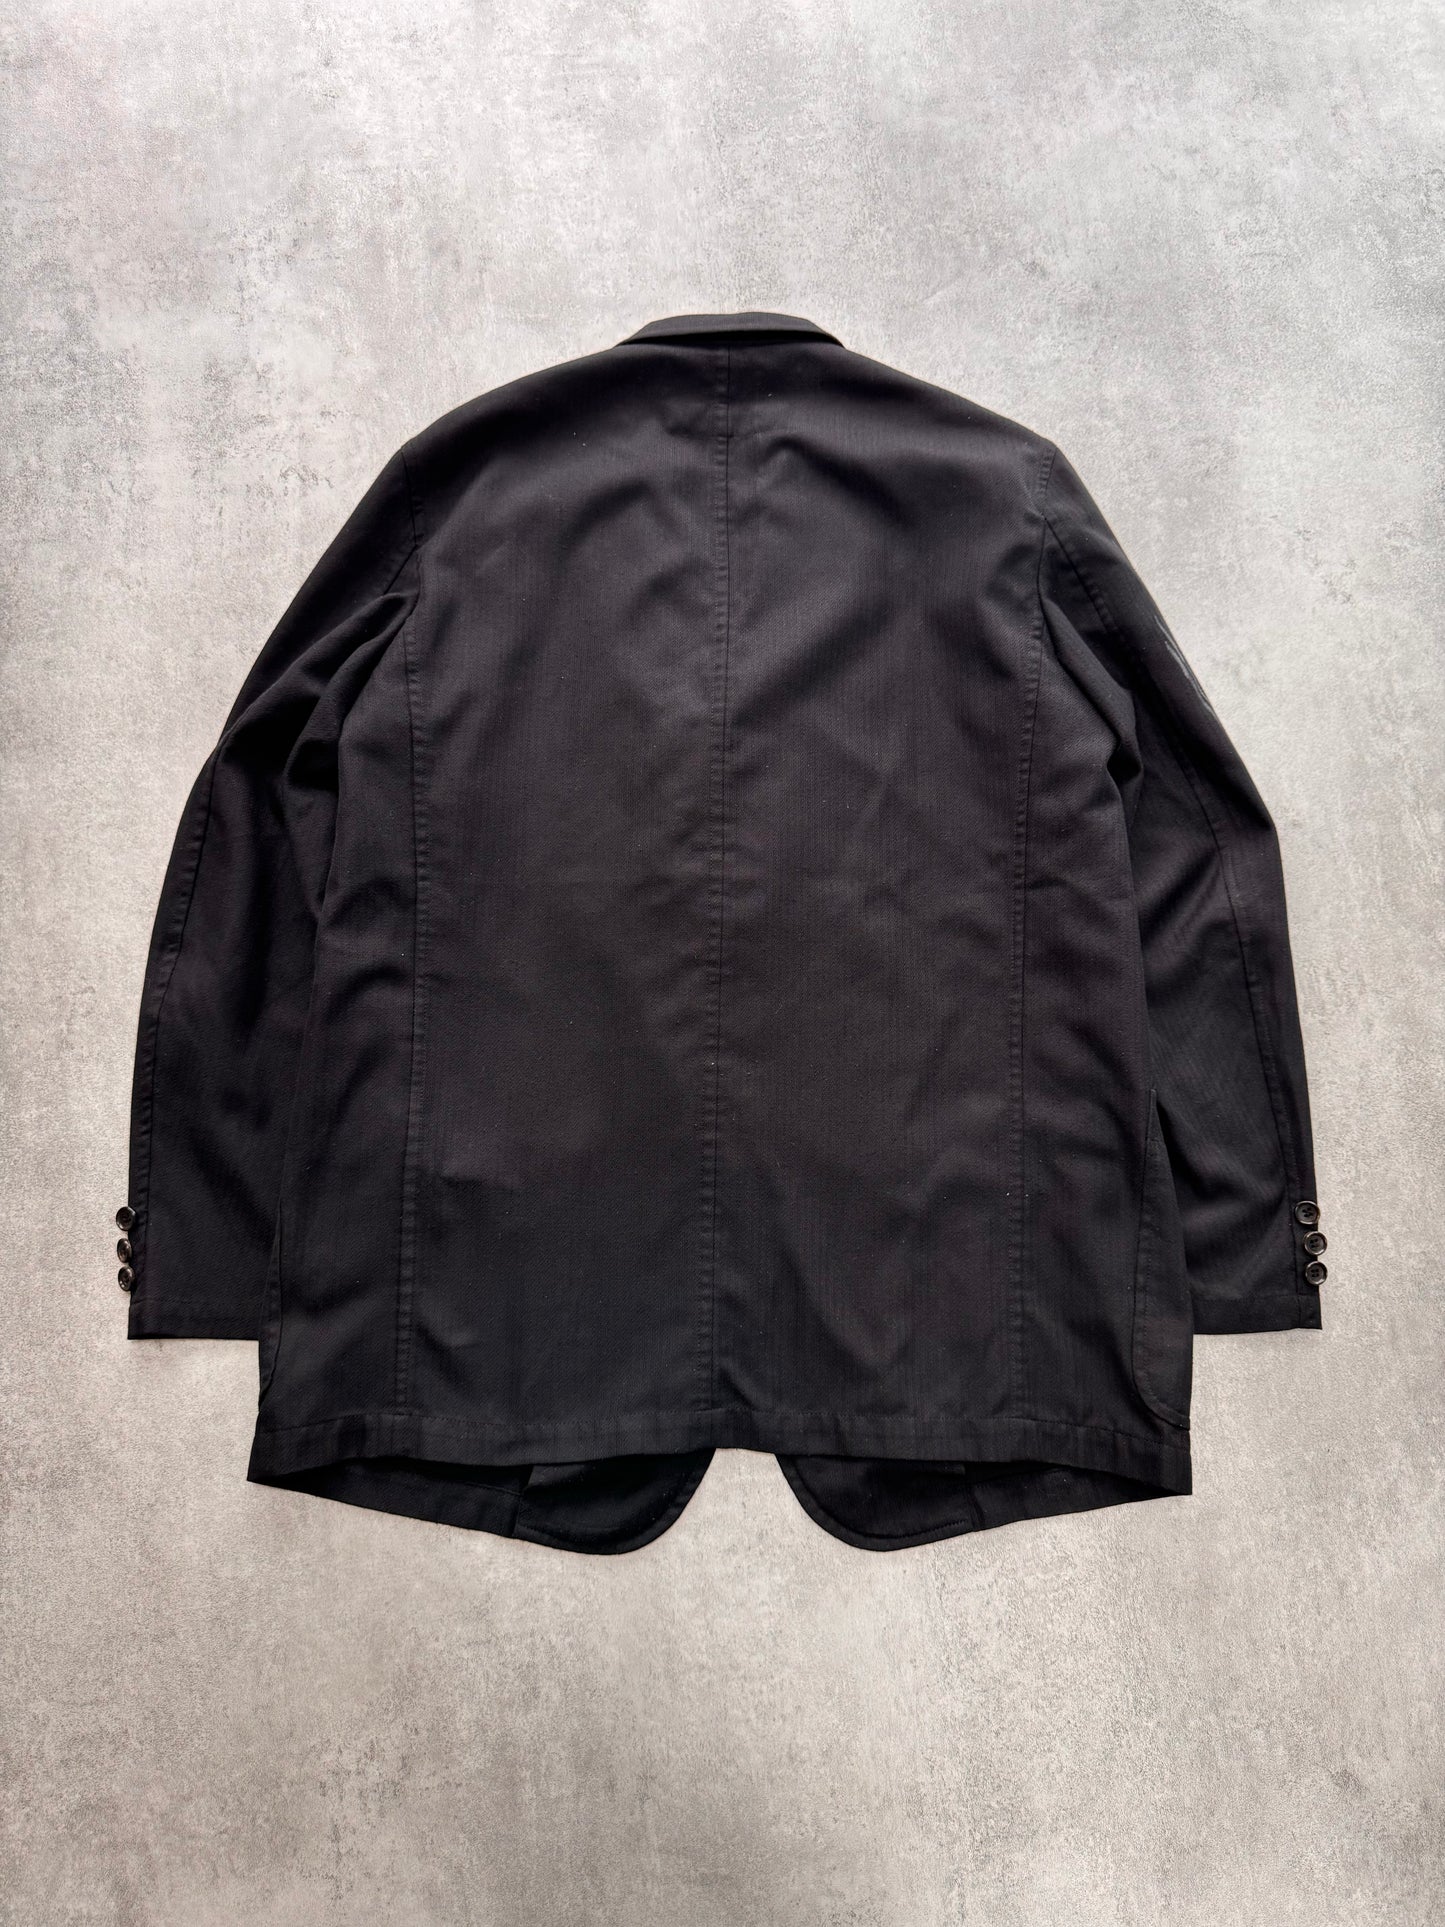 SS2001 Comme Des Garçons Homme Stripes Printed Suit Jacket (M)